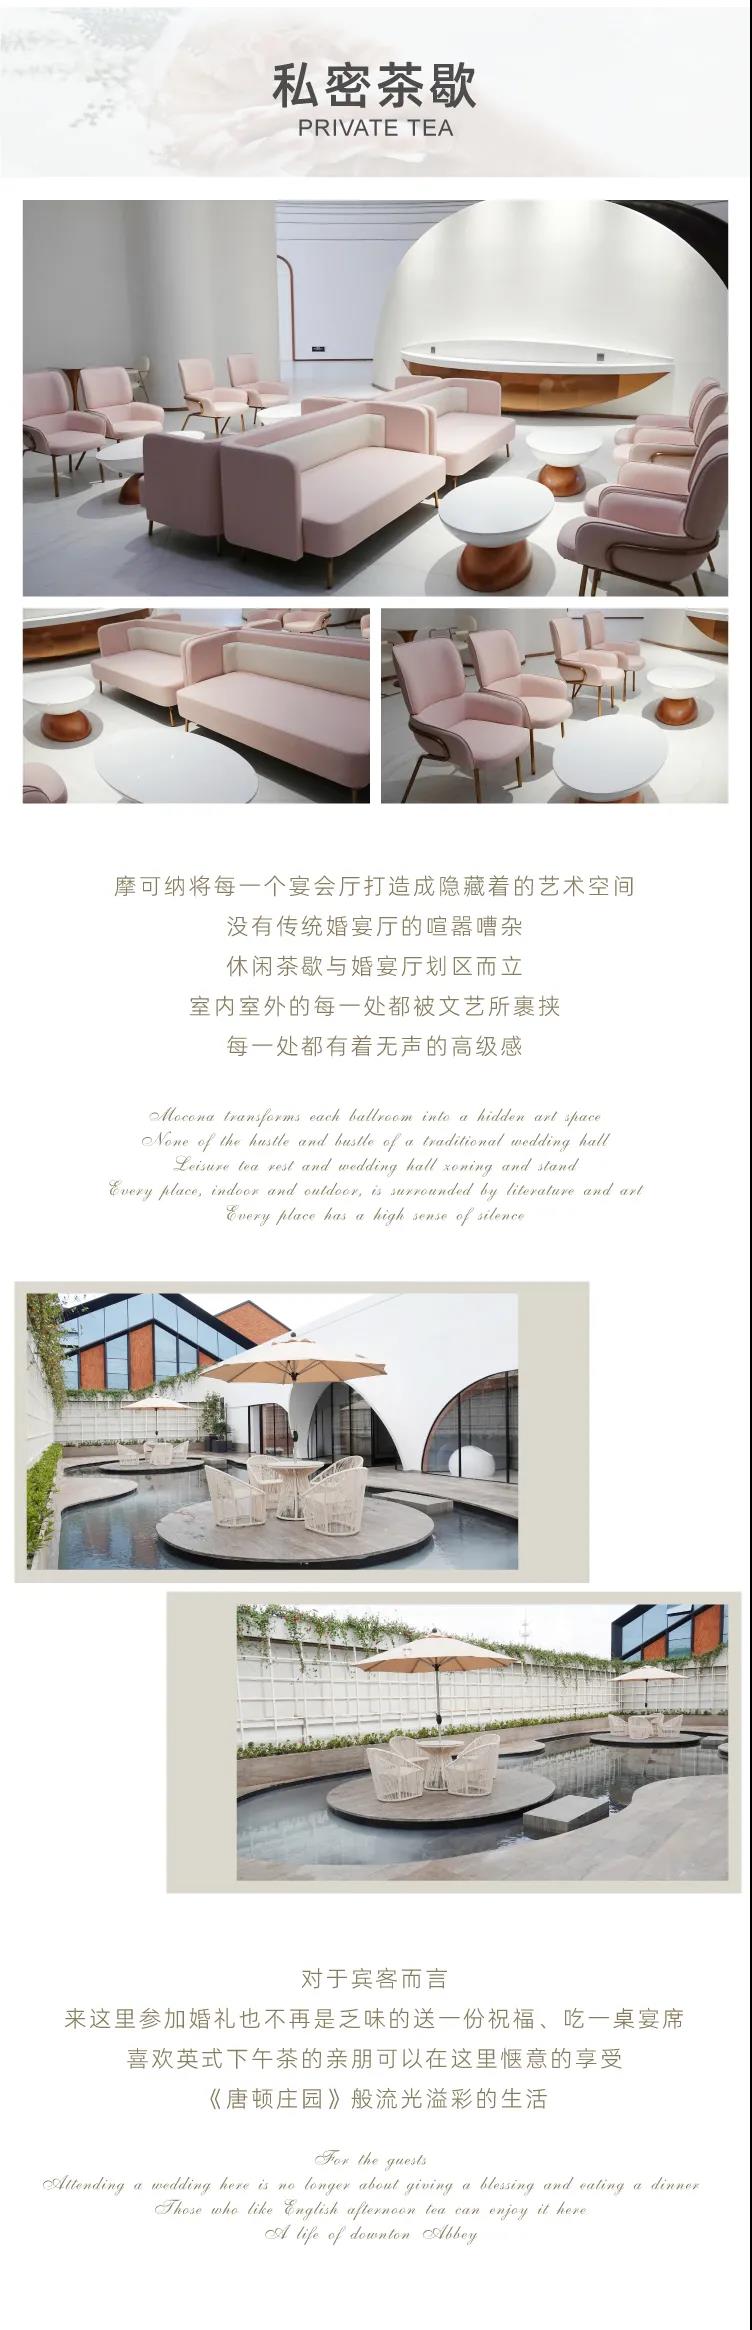 婚礼堂发布：上海摩可纳婚礼艺术中心全新主题【保丽宫】  第4张